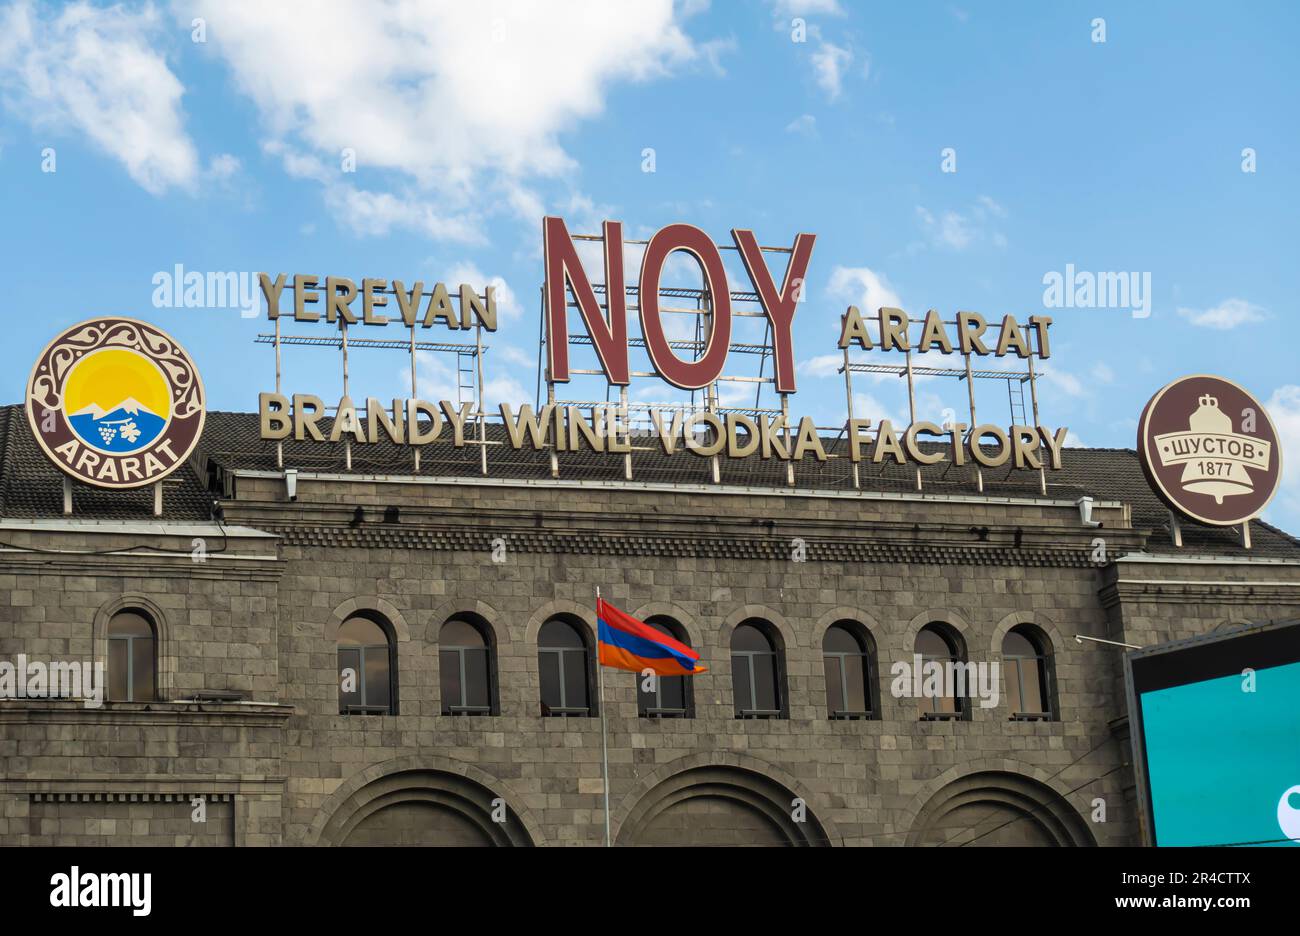 Noy Factory Eriwan Armenien. Produktionsanlage für Brandy, Wein und Wodka mit Besuchertouren, einem Museum und einem Geschäft Stockfoto